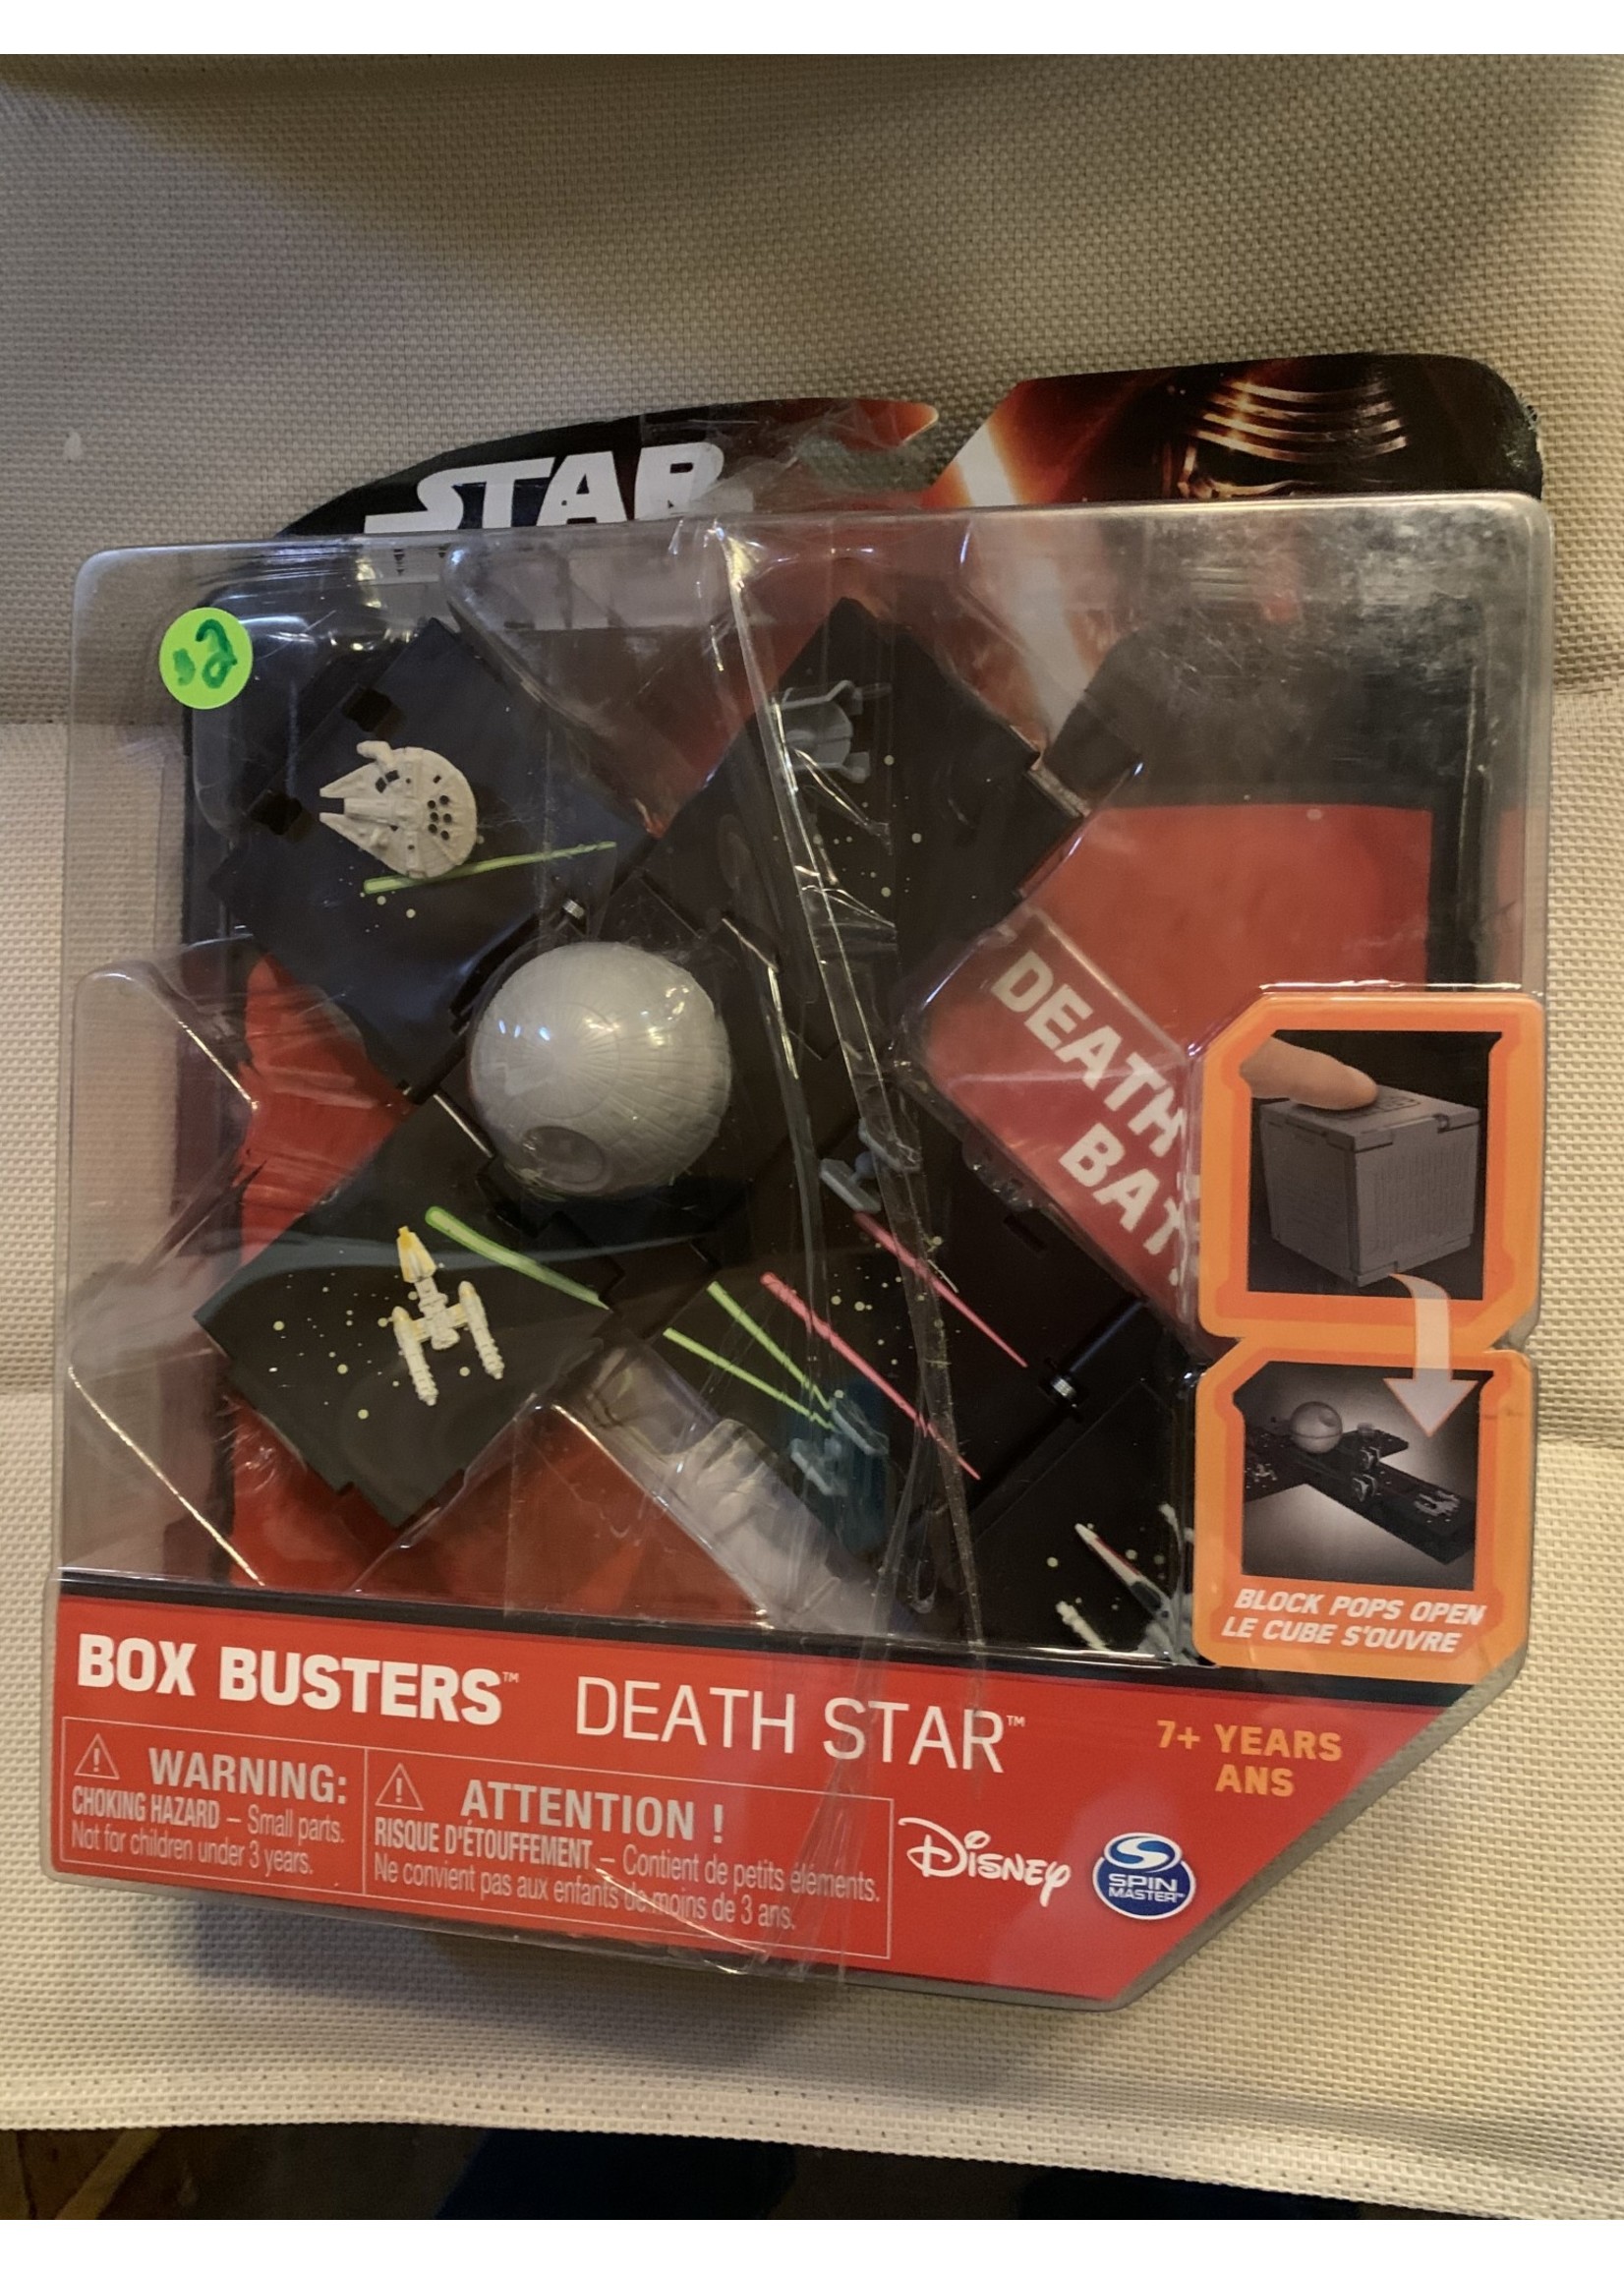 Star Wars Box Busters Death Stars